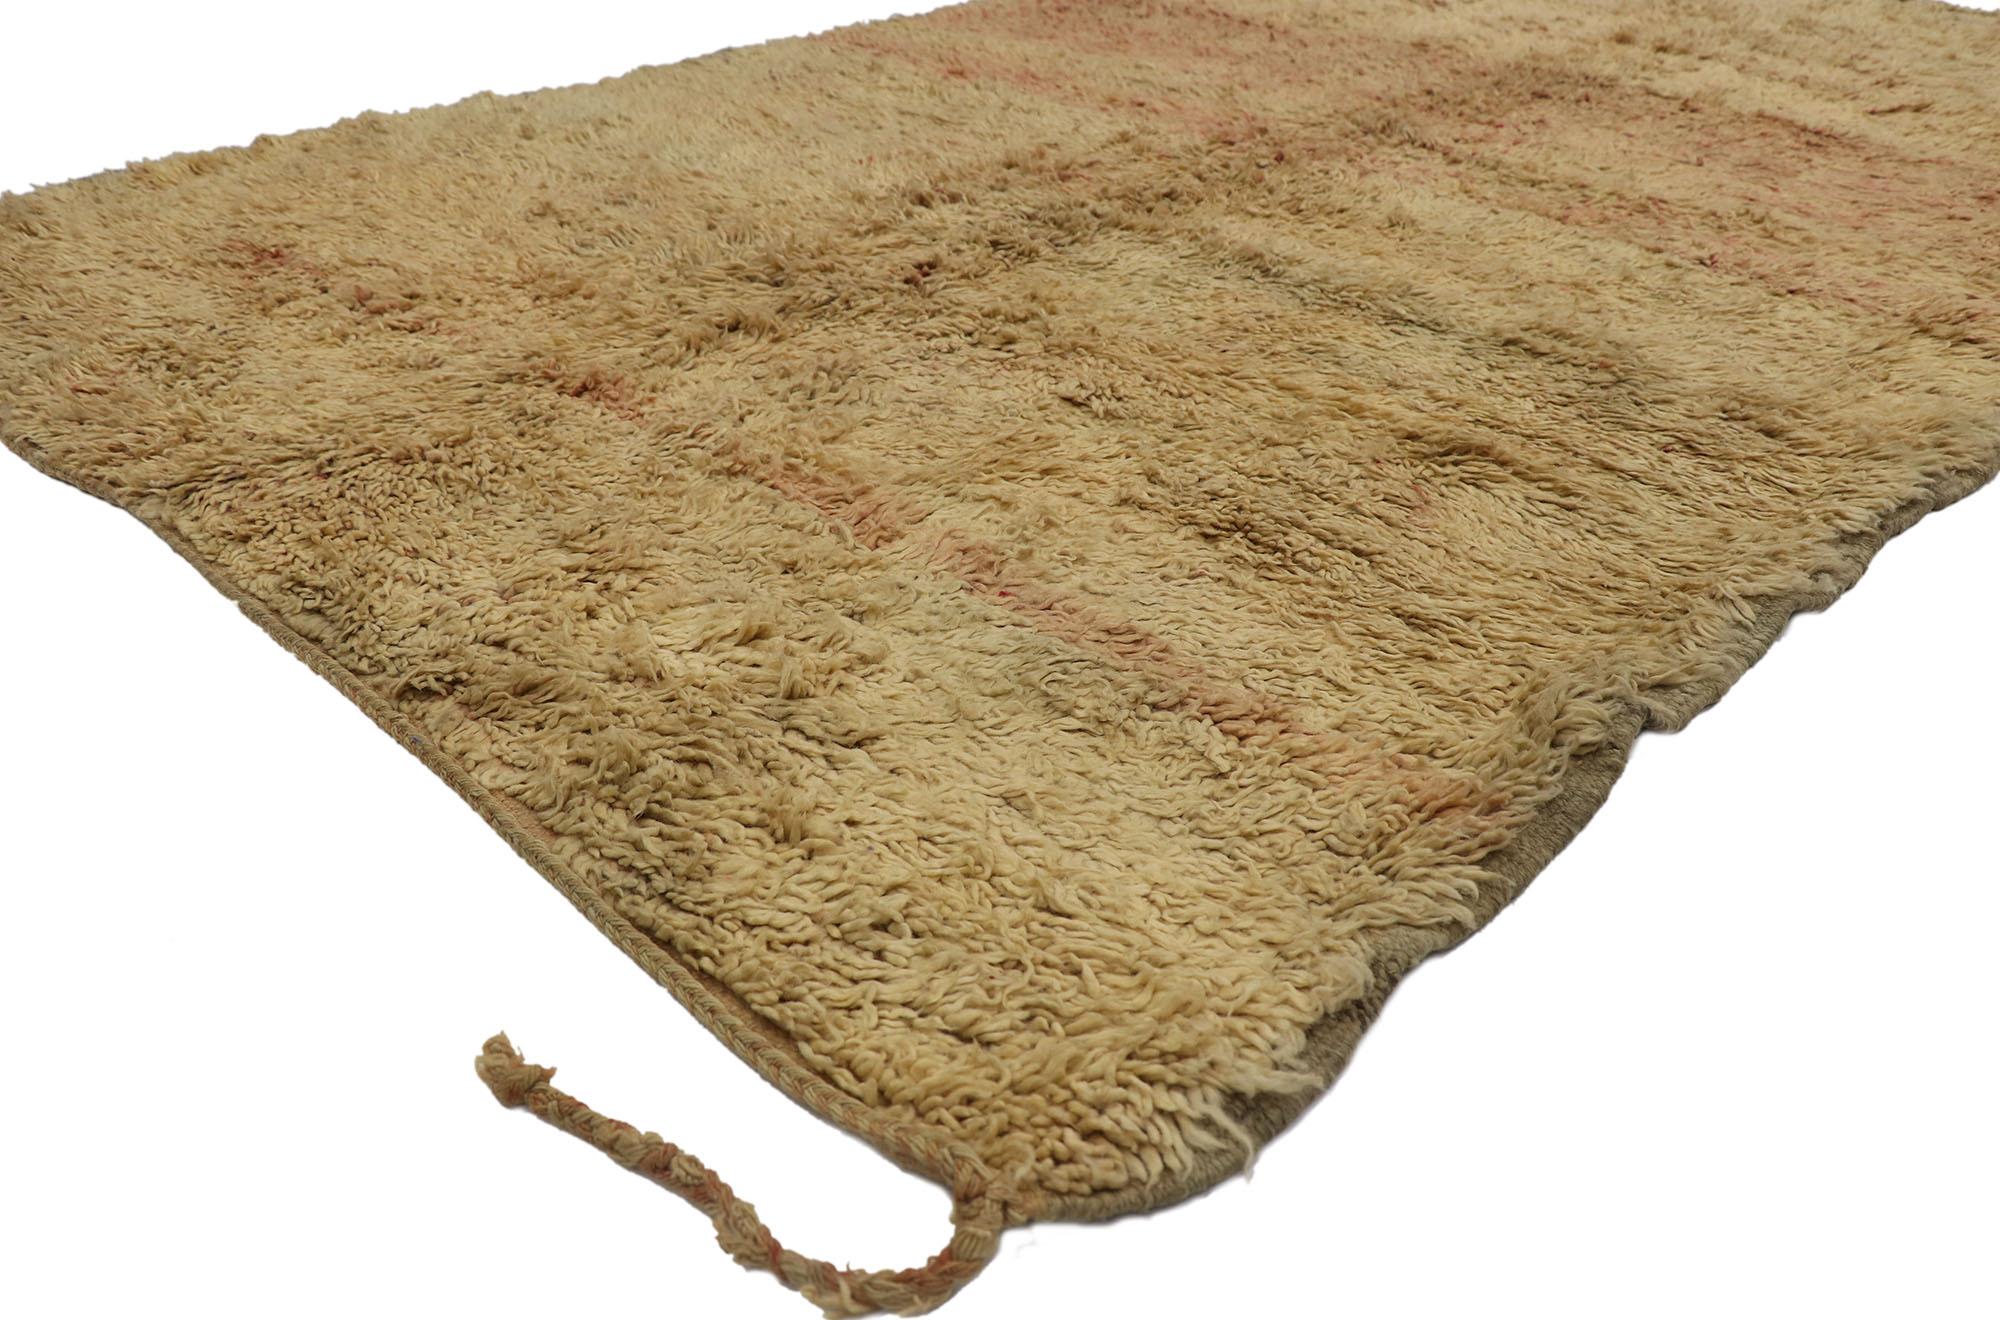 21477 Vintage Berber Beni Mrirt tapis marocain avec style organique moderne 06'04 x 10'04. Avec sa simplicité, ses poils pelucheux et sa sensibilité rustique, ce tapis berbère vintage Beni Mrirt en laine nouée à la main est une vision captivante de